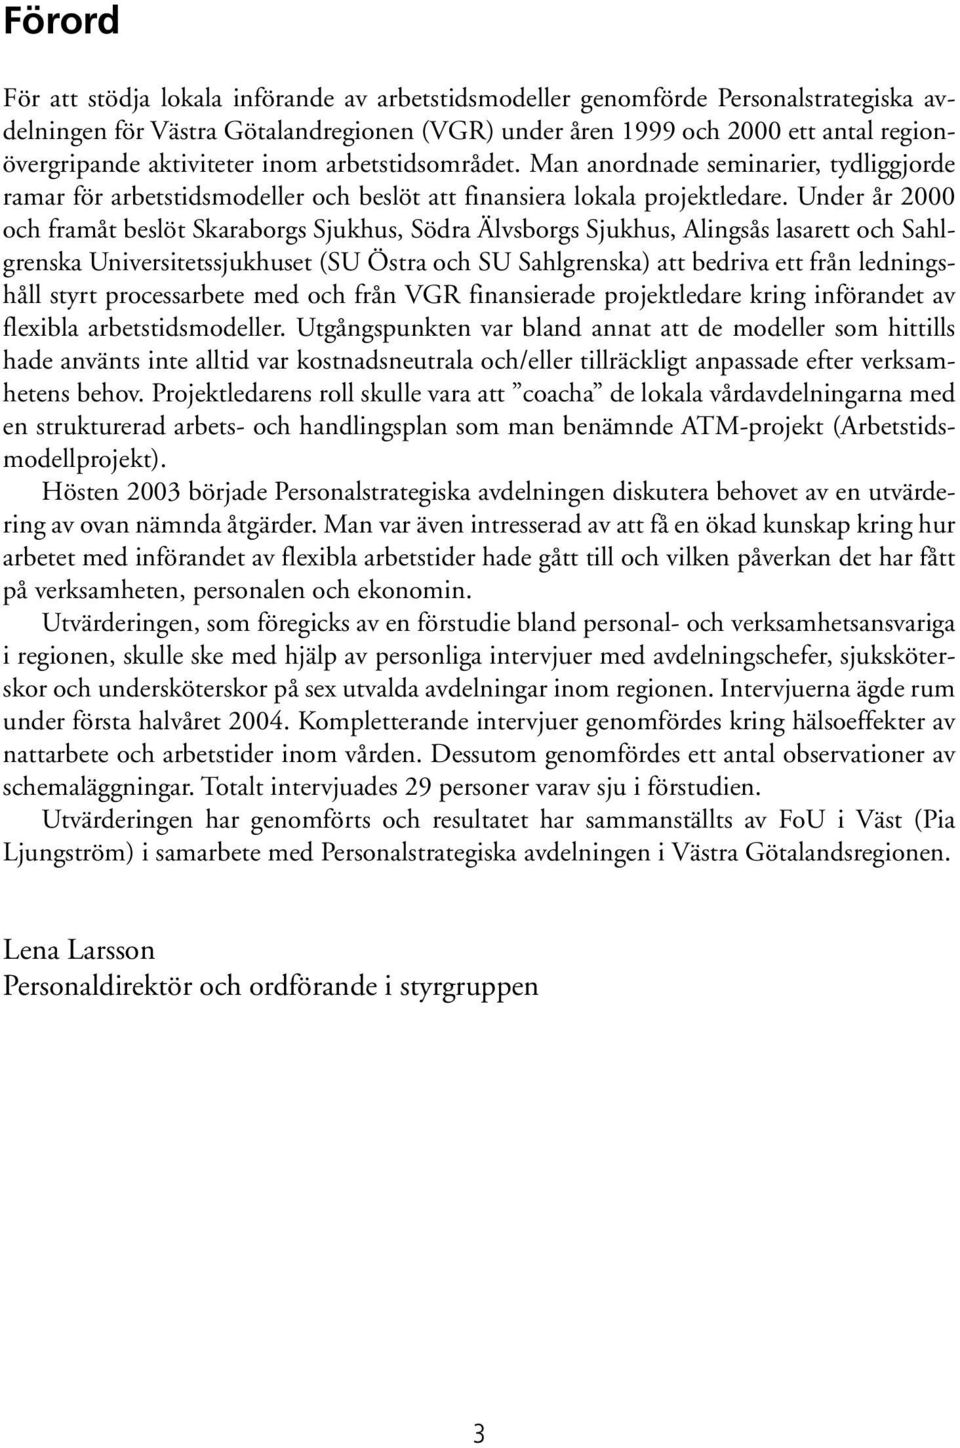 Under år 2000 och framåt beslöt Skaraborgs Sjukhus, Södra Älvsborgs Sjukhus, Alingsås lasarett och Sahlgrenska Universitetssjukhuset (SU Östra och SU Sahlgrenska) att bedriva ett från ledningshåll